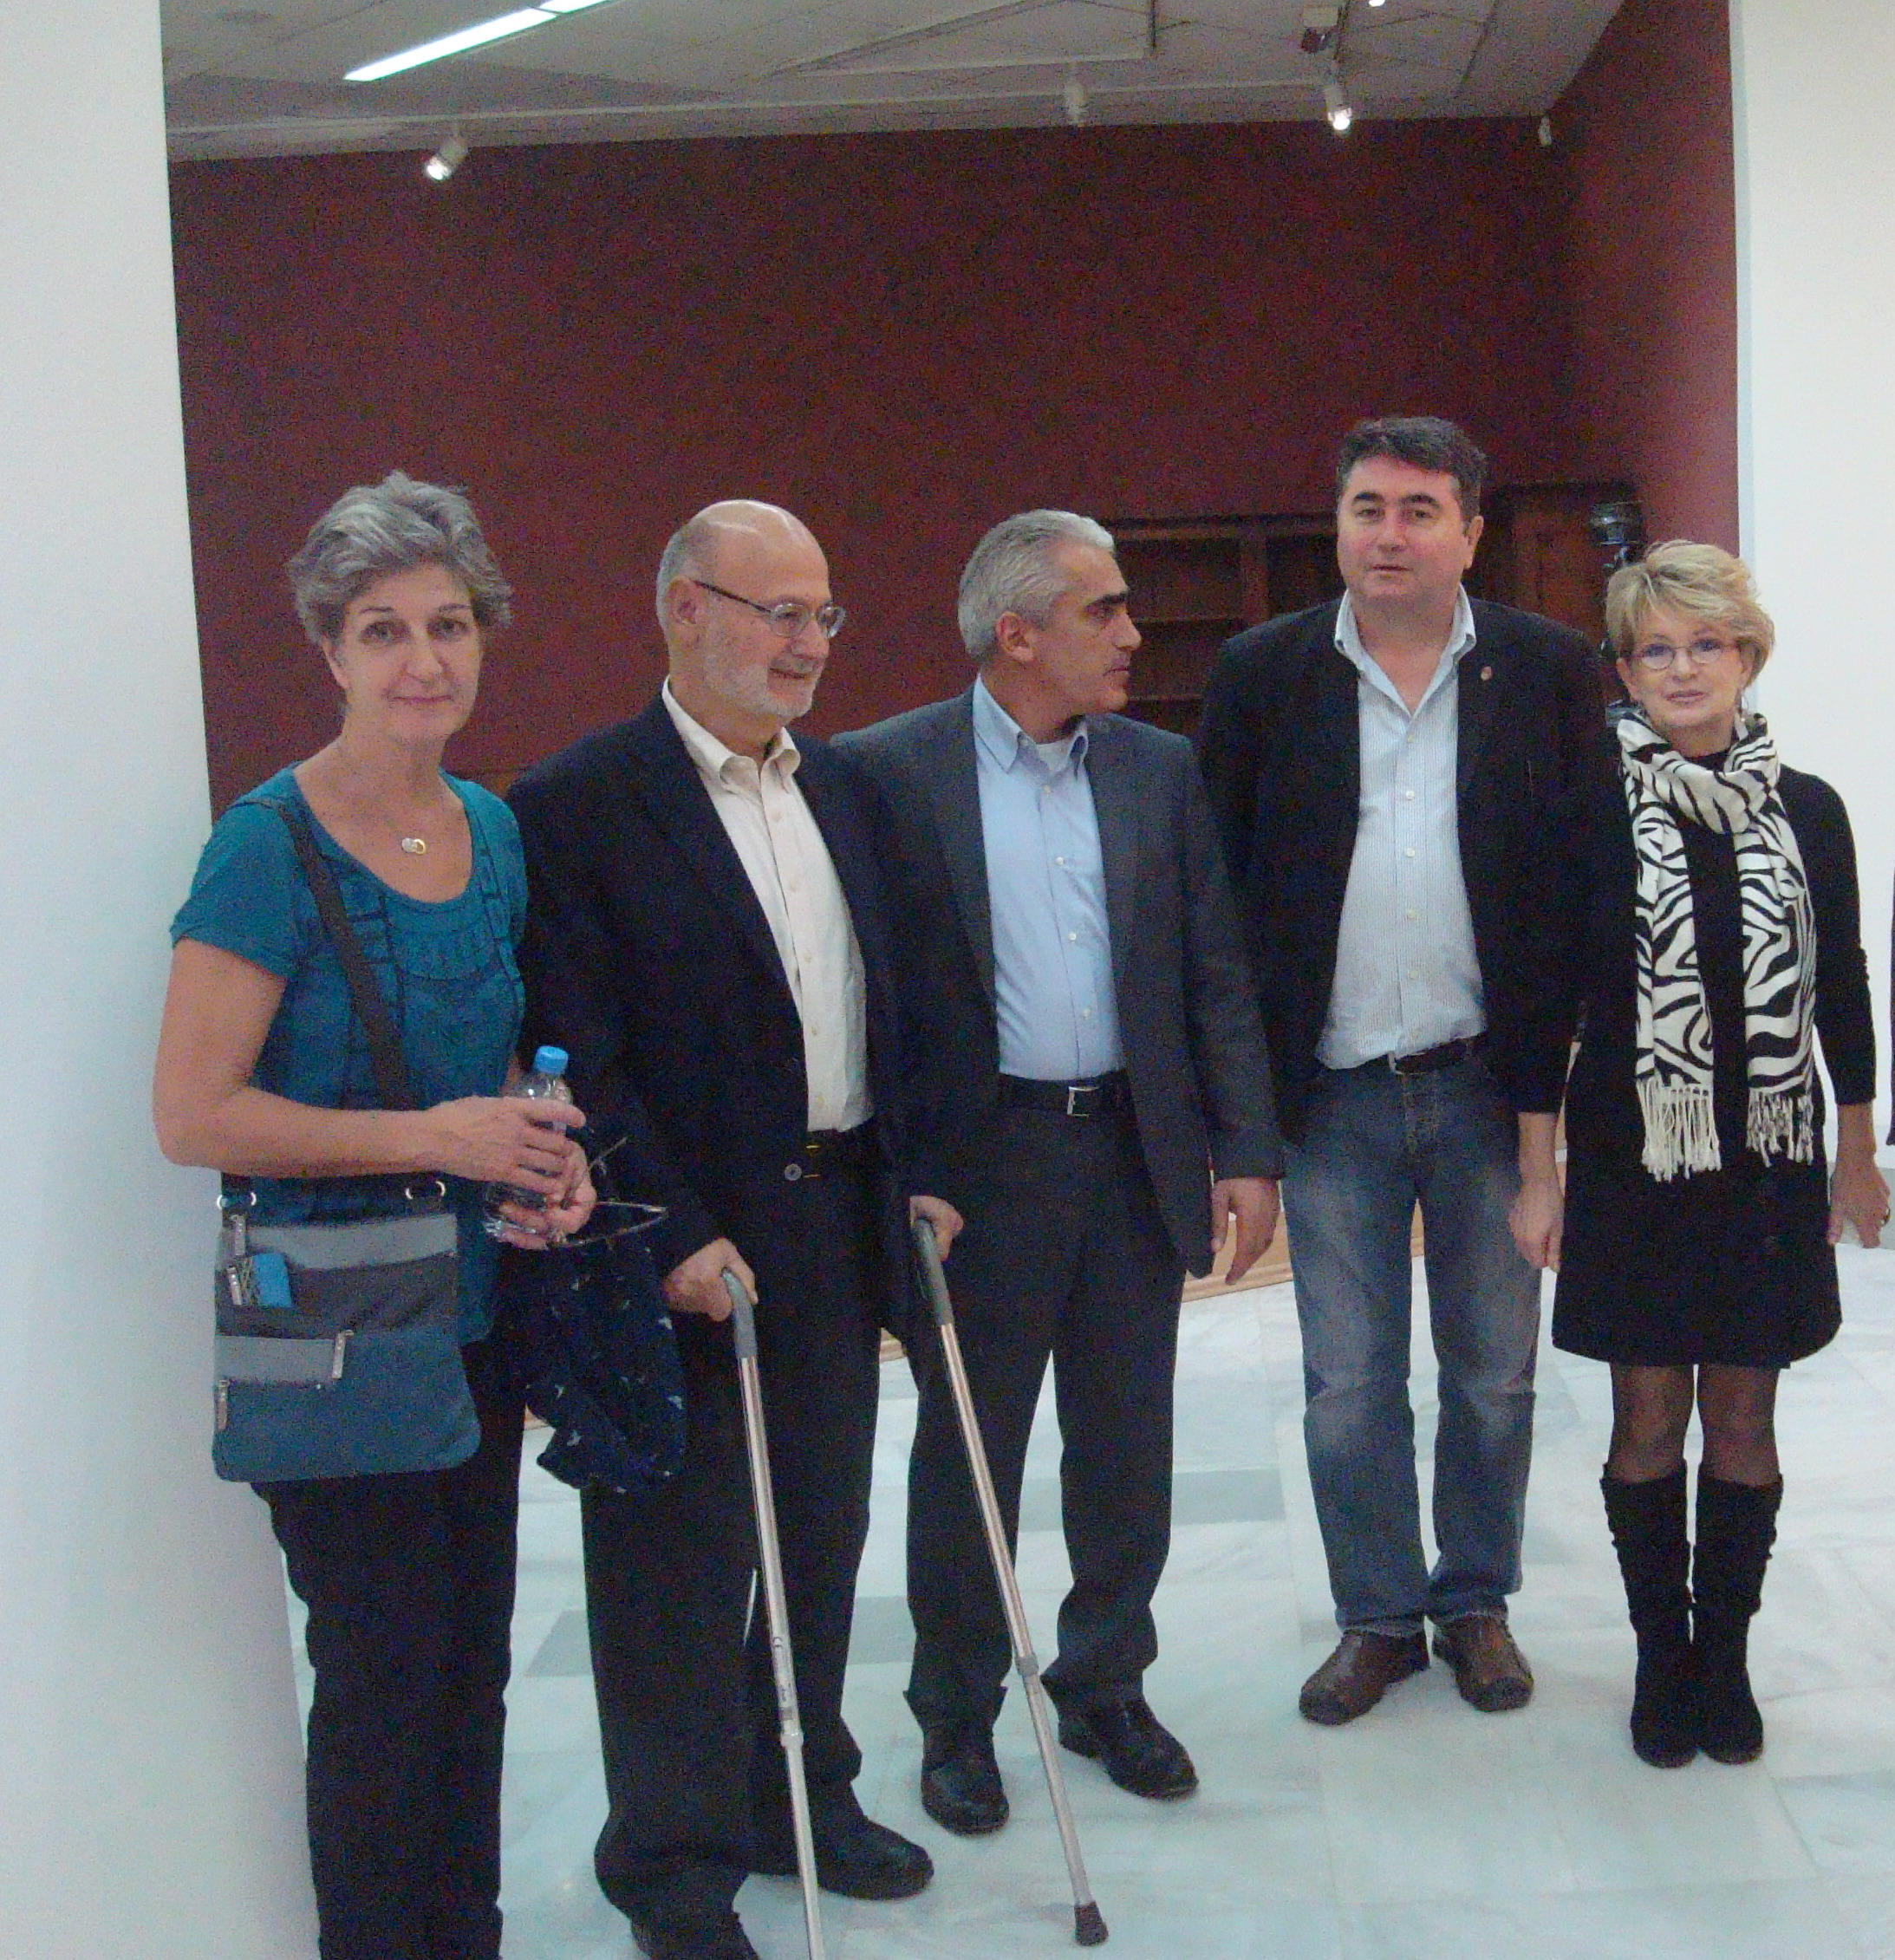 Επίσκεψη του καθηγητή Νευρολογίας Salvatore DiΜaouro στη Δημοτική Πινακοθήκη Λάρισας